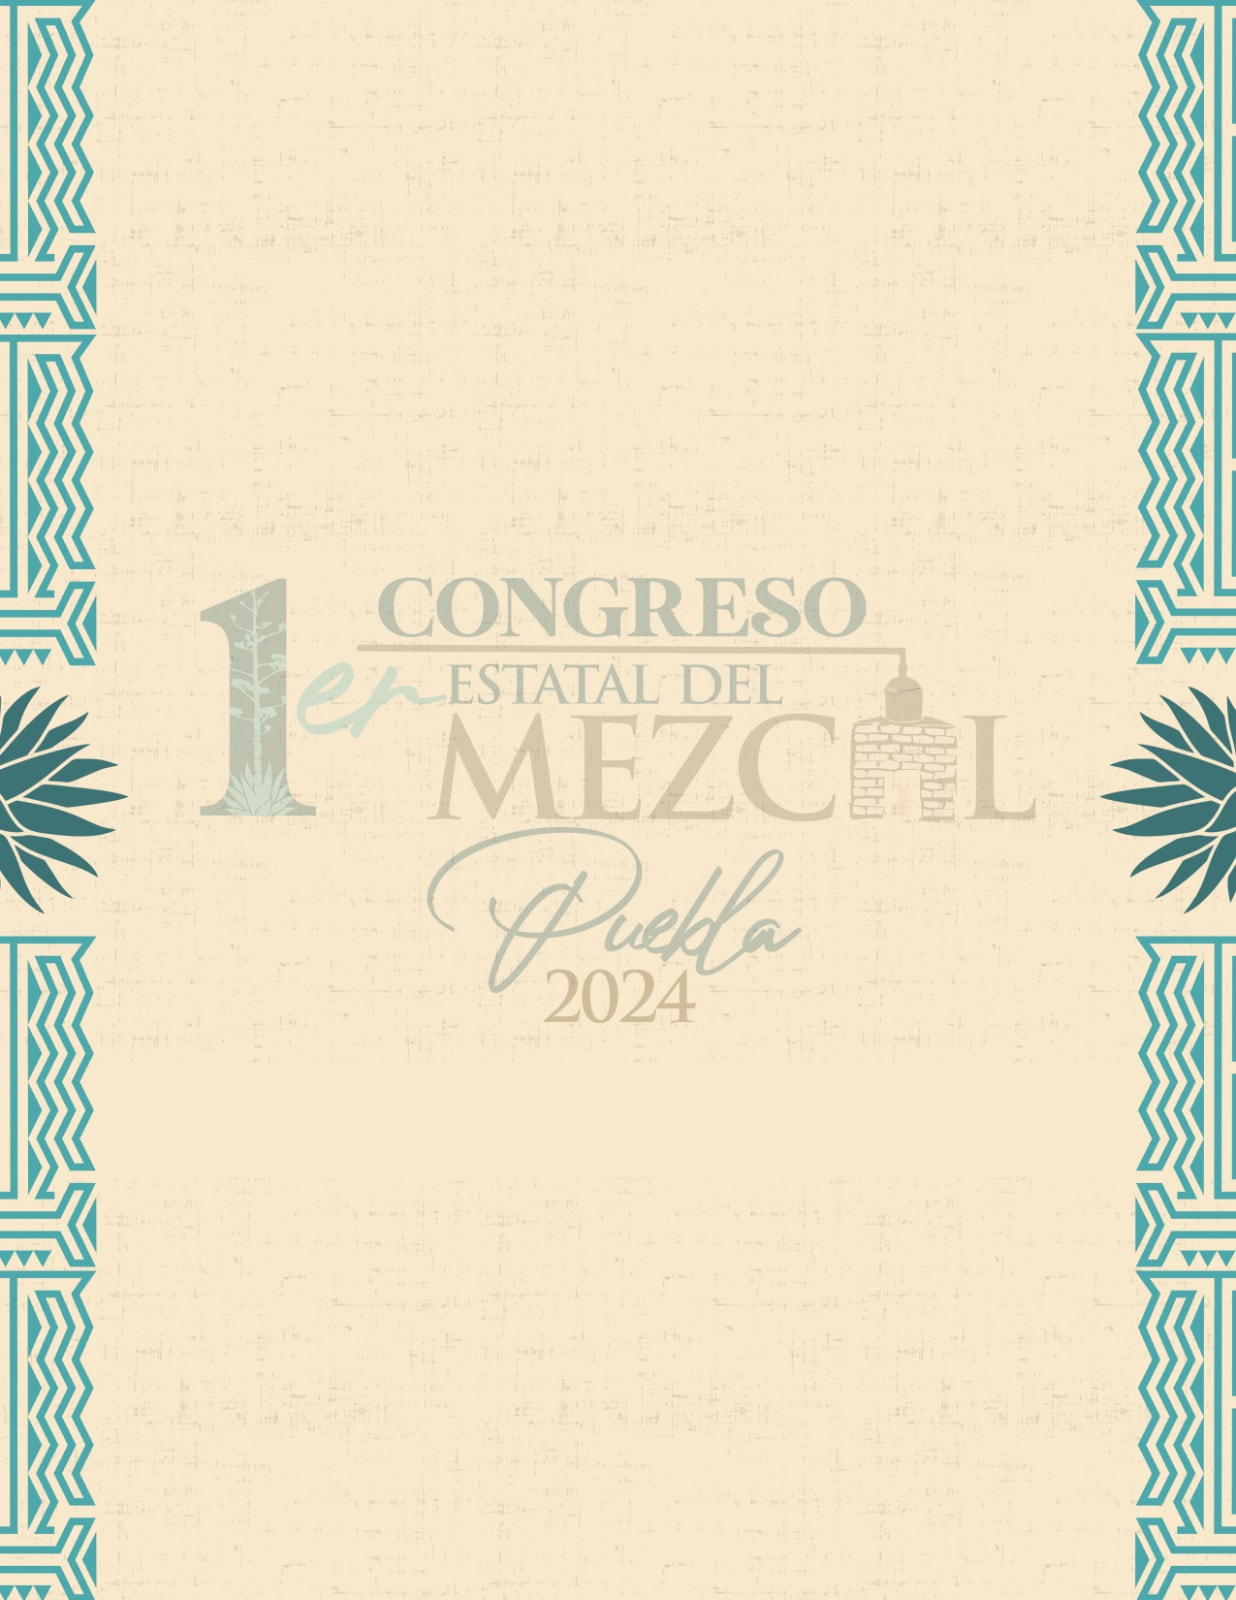 Cartel sobre el primer congreso del Mezcal en Puebla